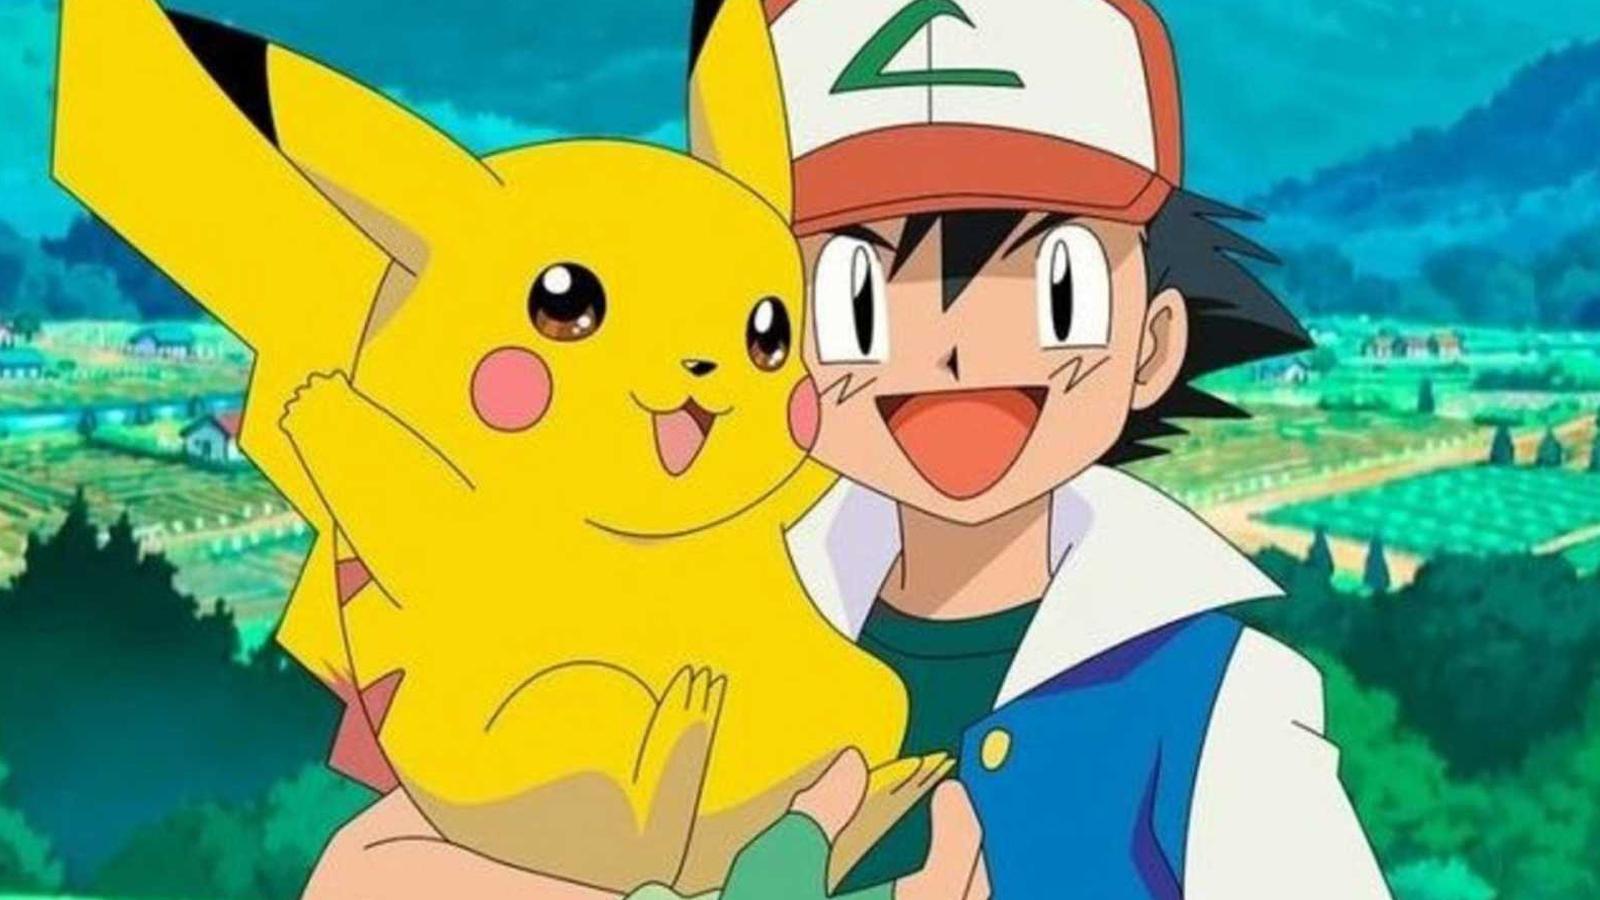 Orden de la serie y películas de Pokémon: clásicas, nueva generación,  Horizons y más - Dexerto